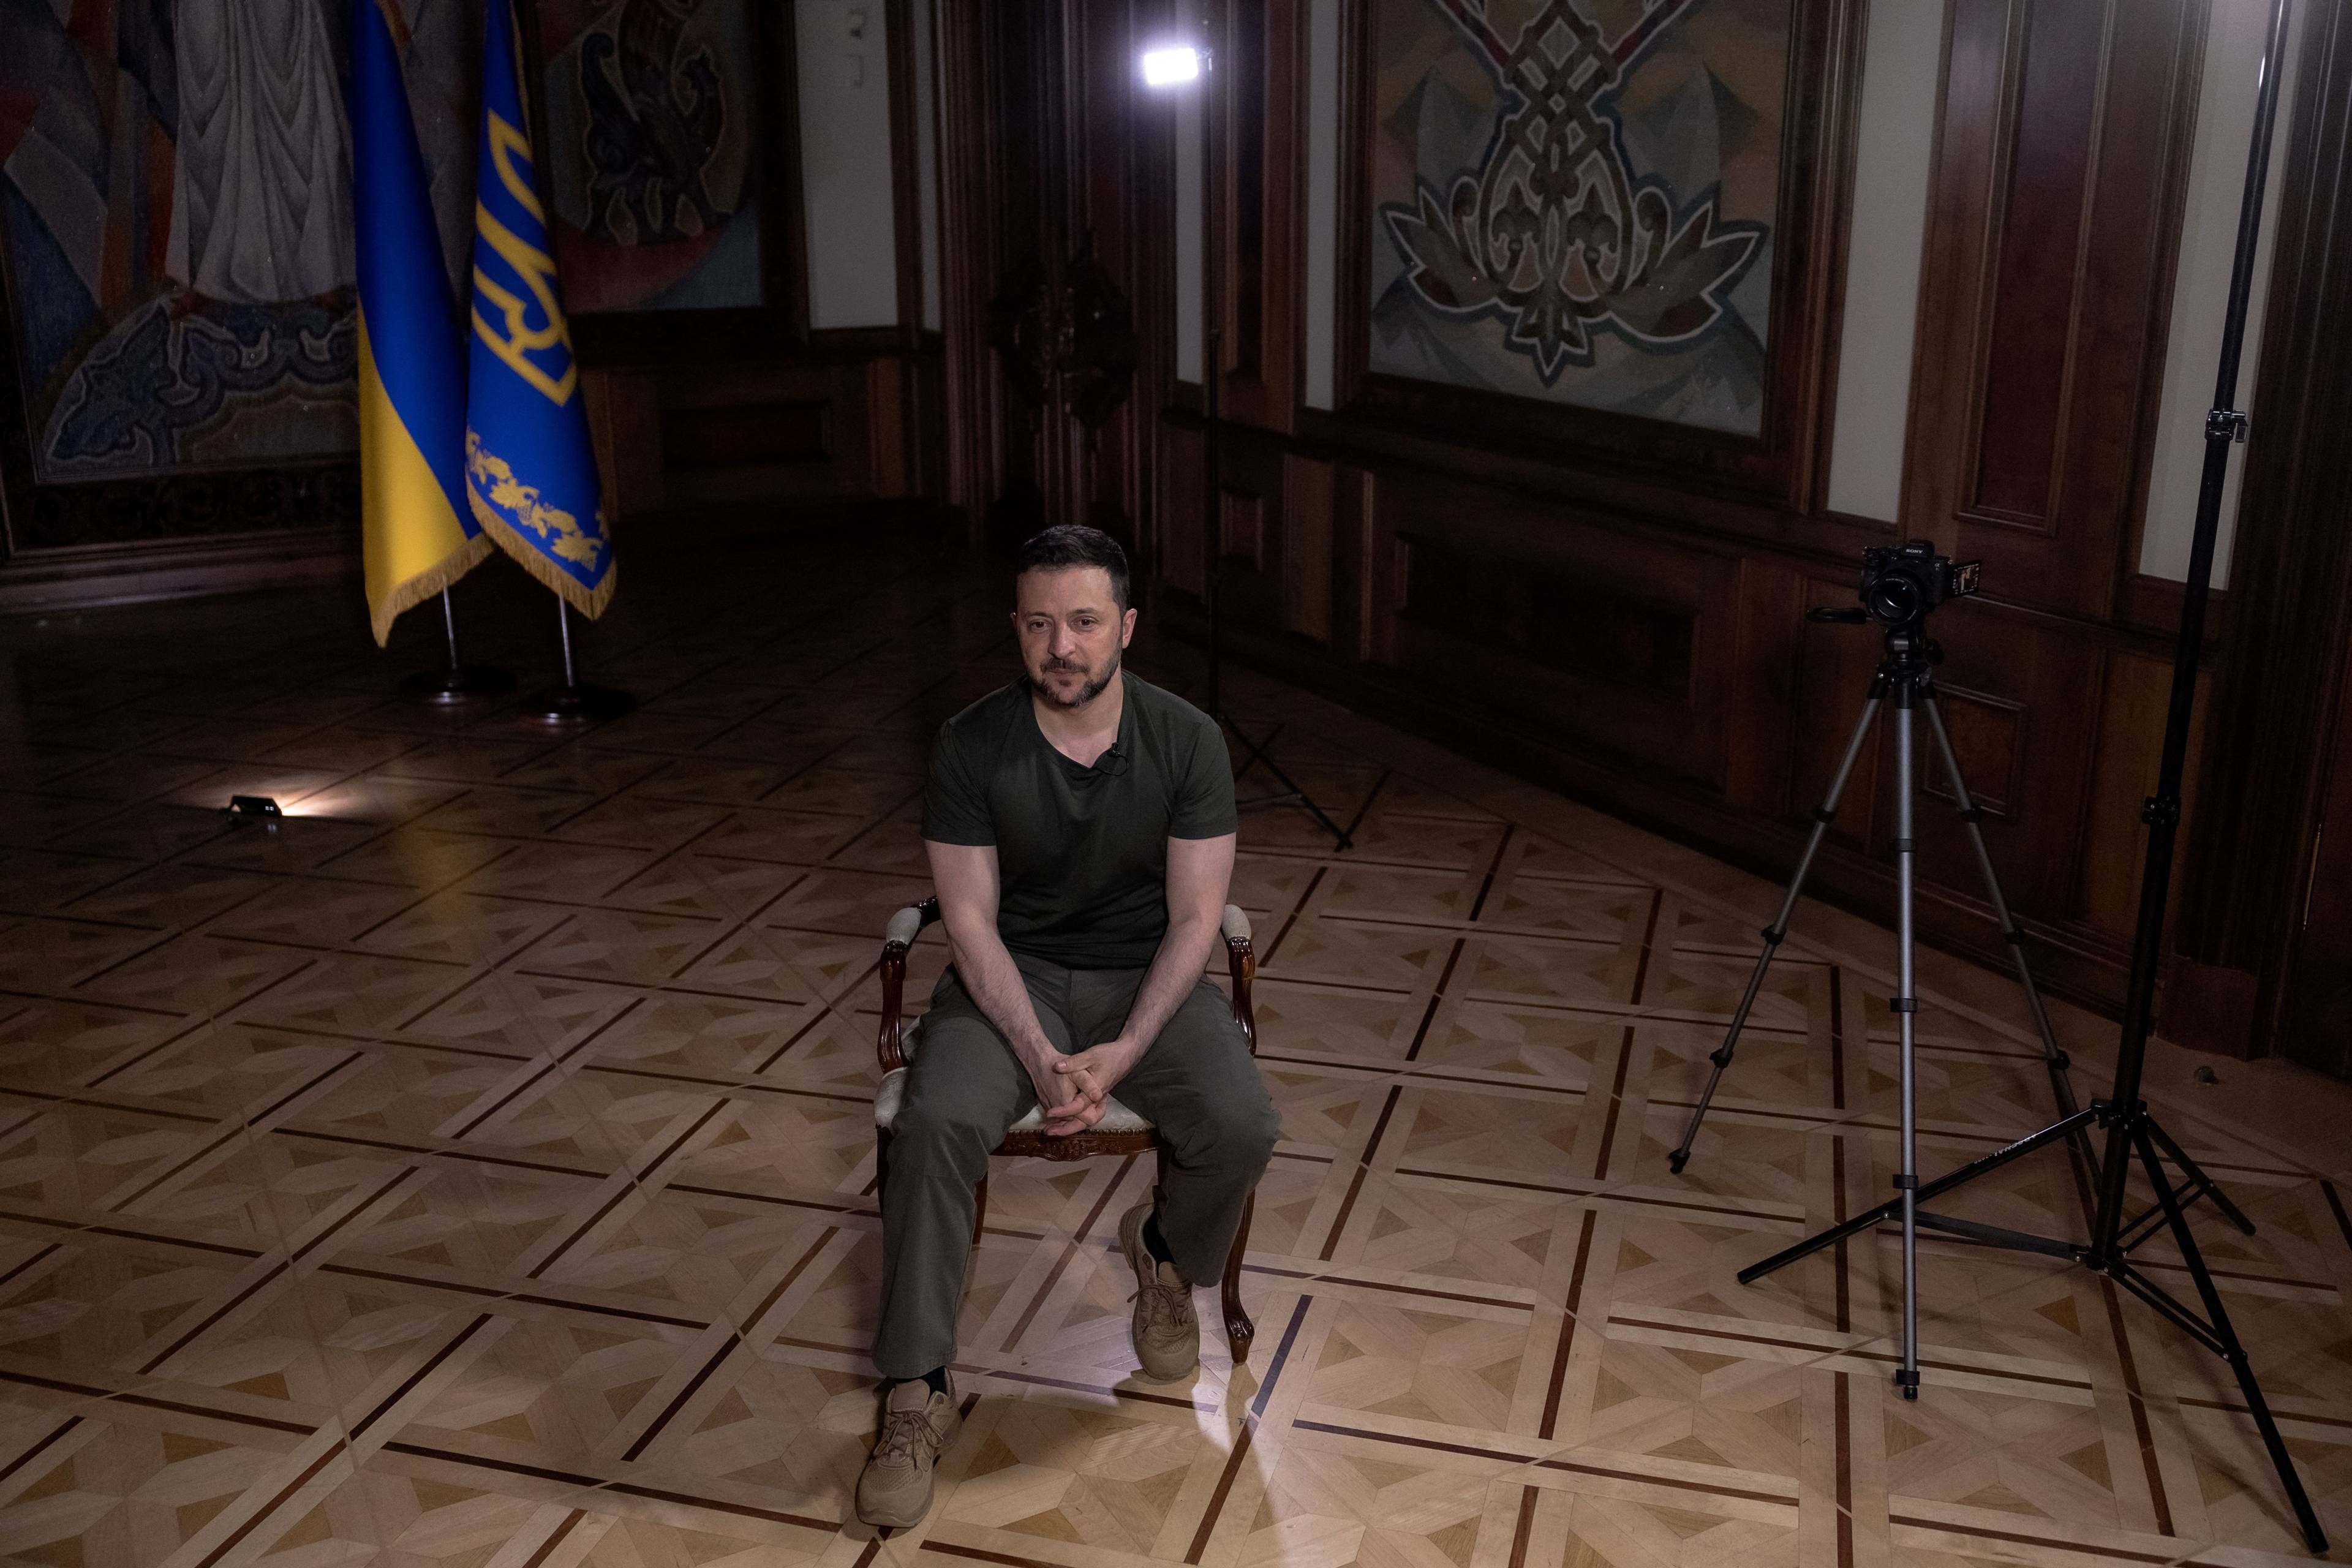 Prezydent Zełenski siedzi na krześle w pustym pokoju